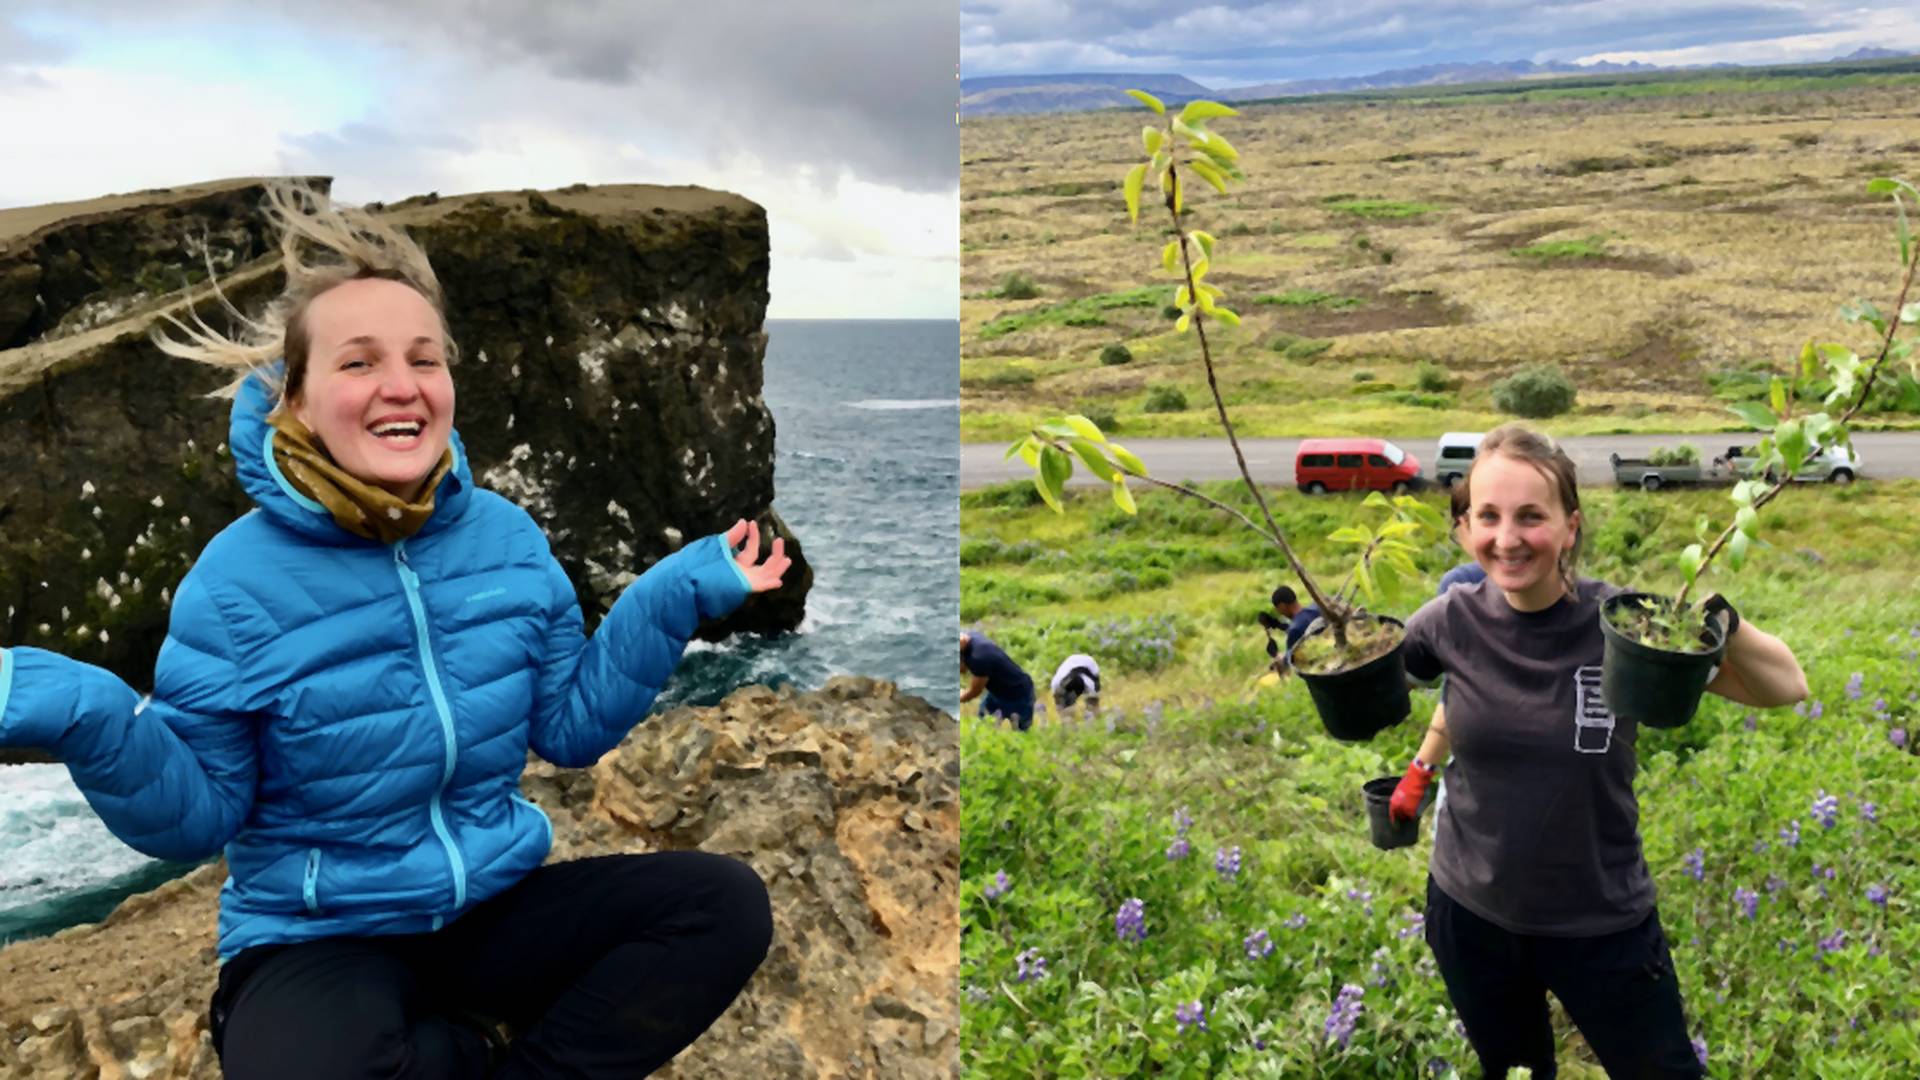 Dominika pol roka dobrovoľníčila na Islande: Od miestnych by sme sa mohli učiť tolerancii